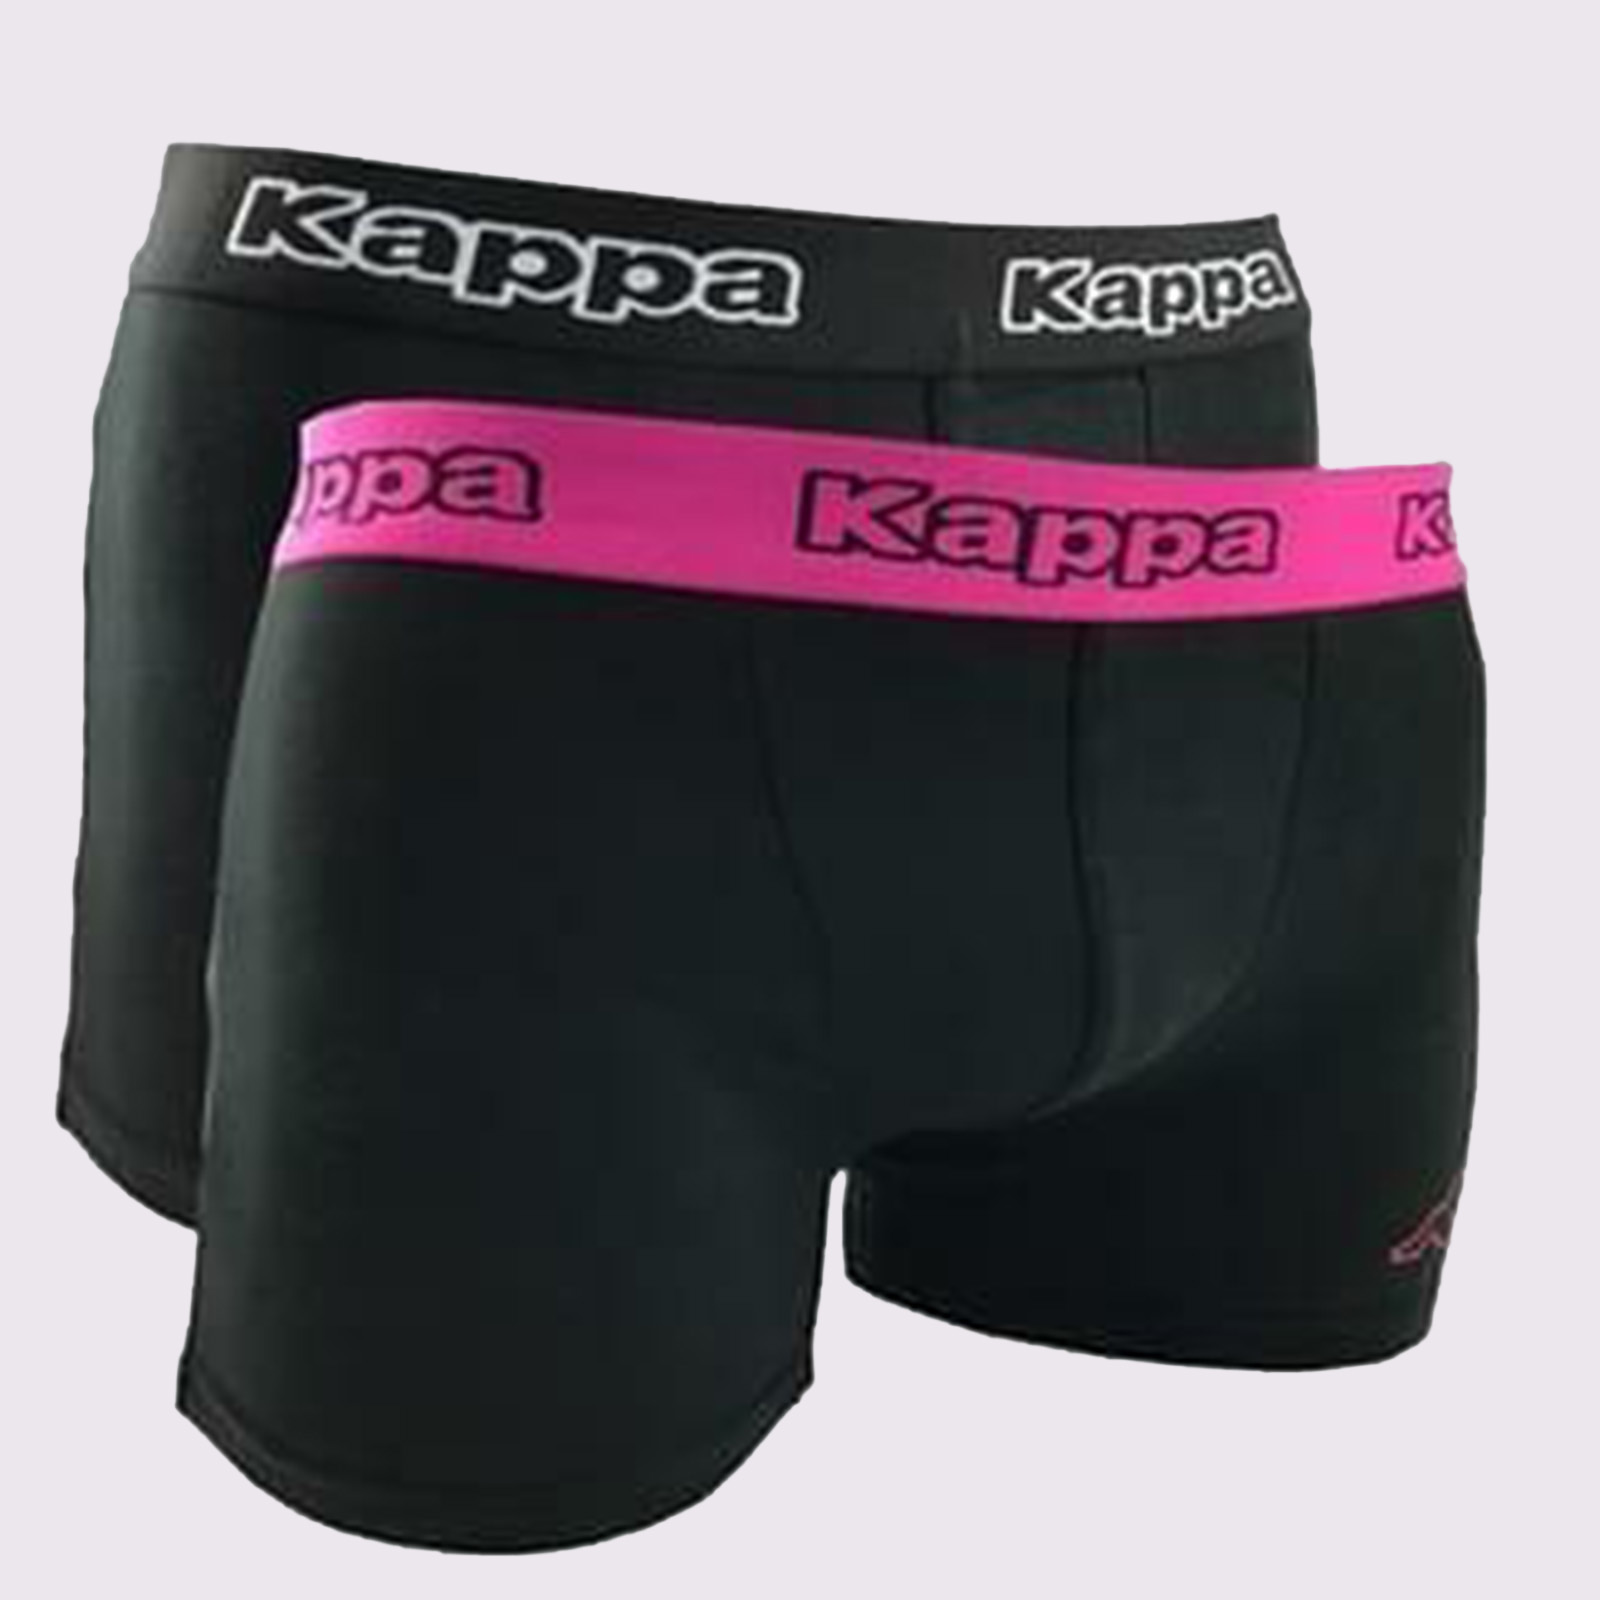 Download Kappa Boxer Shorts 2 Pack